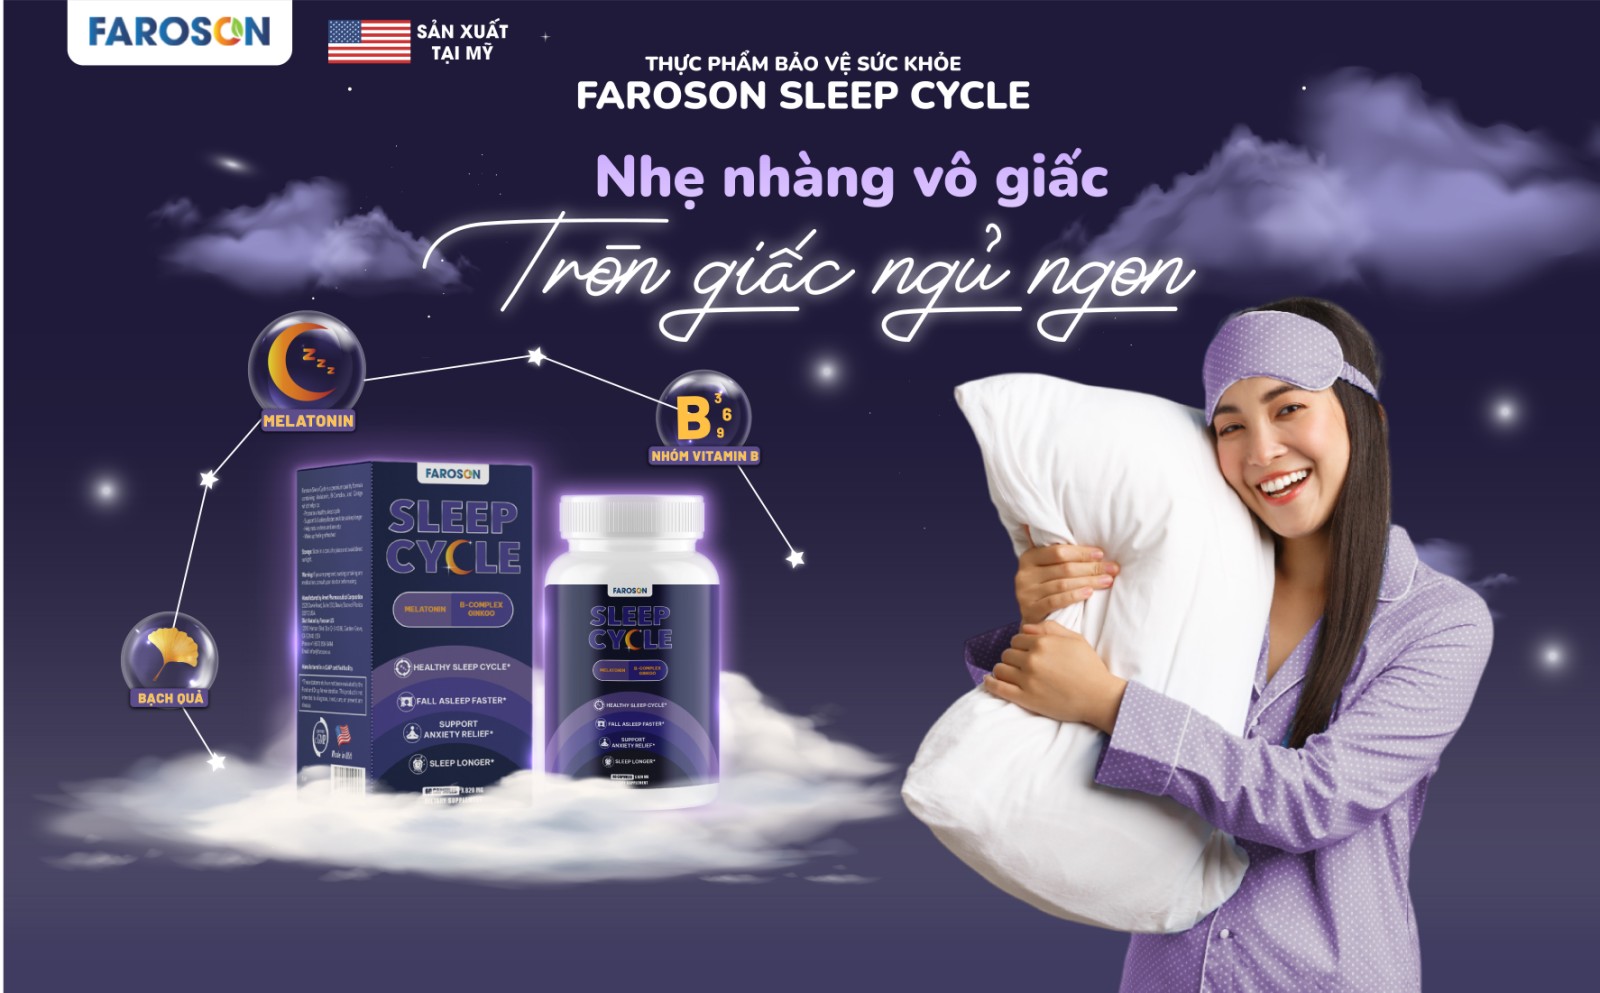 Trải nghiệm chu kỳ giấc ngủ toàn diện với sản phẩm mới Faroson Sleep Cycle